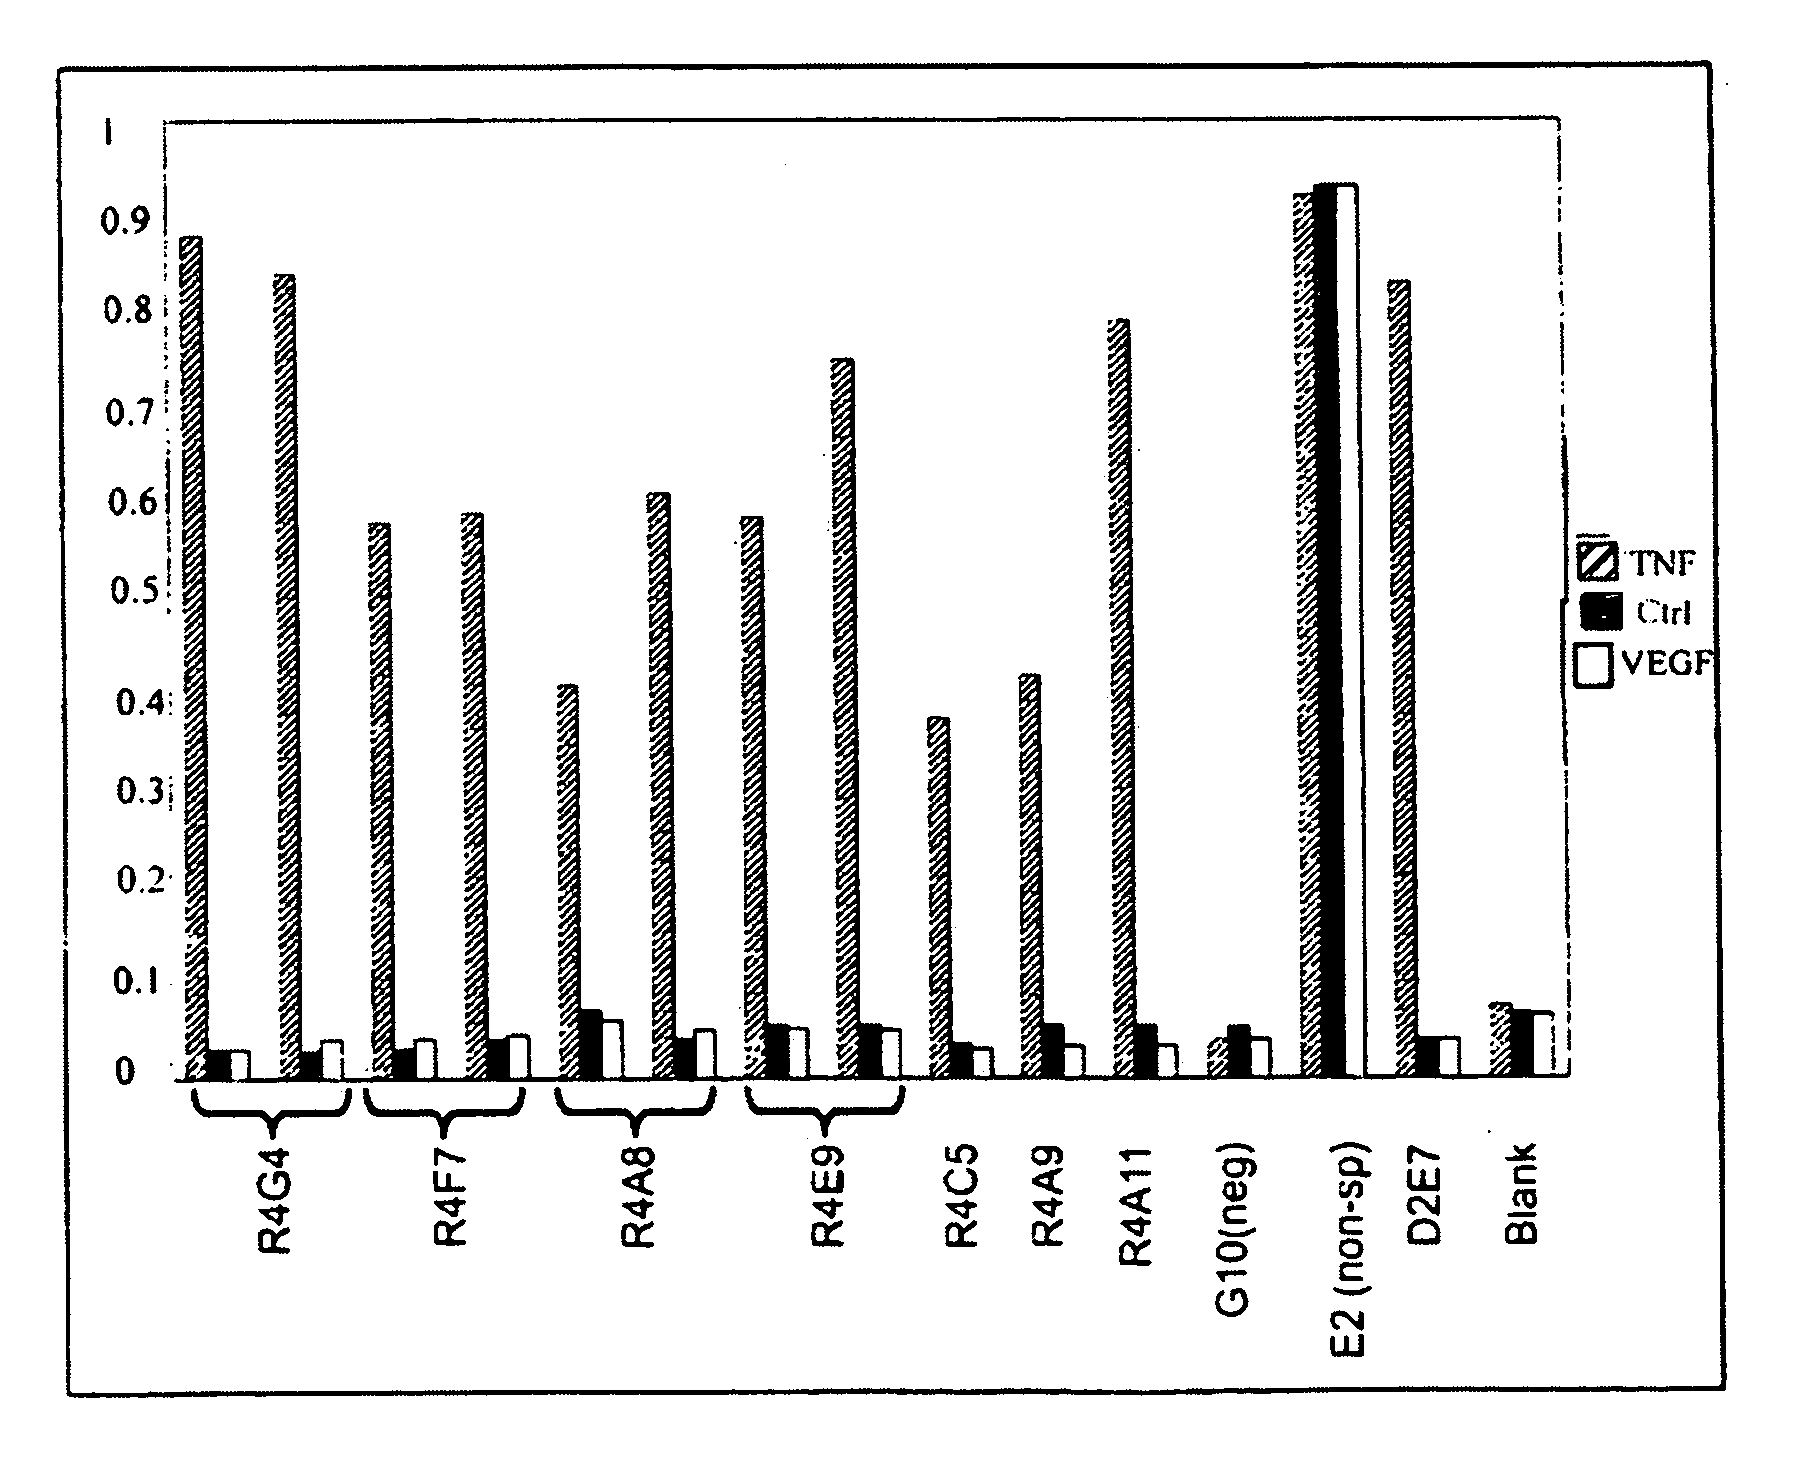 Universal fibronectin type III binding-domain libraries